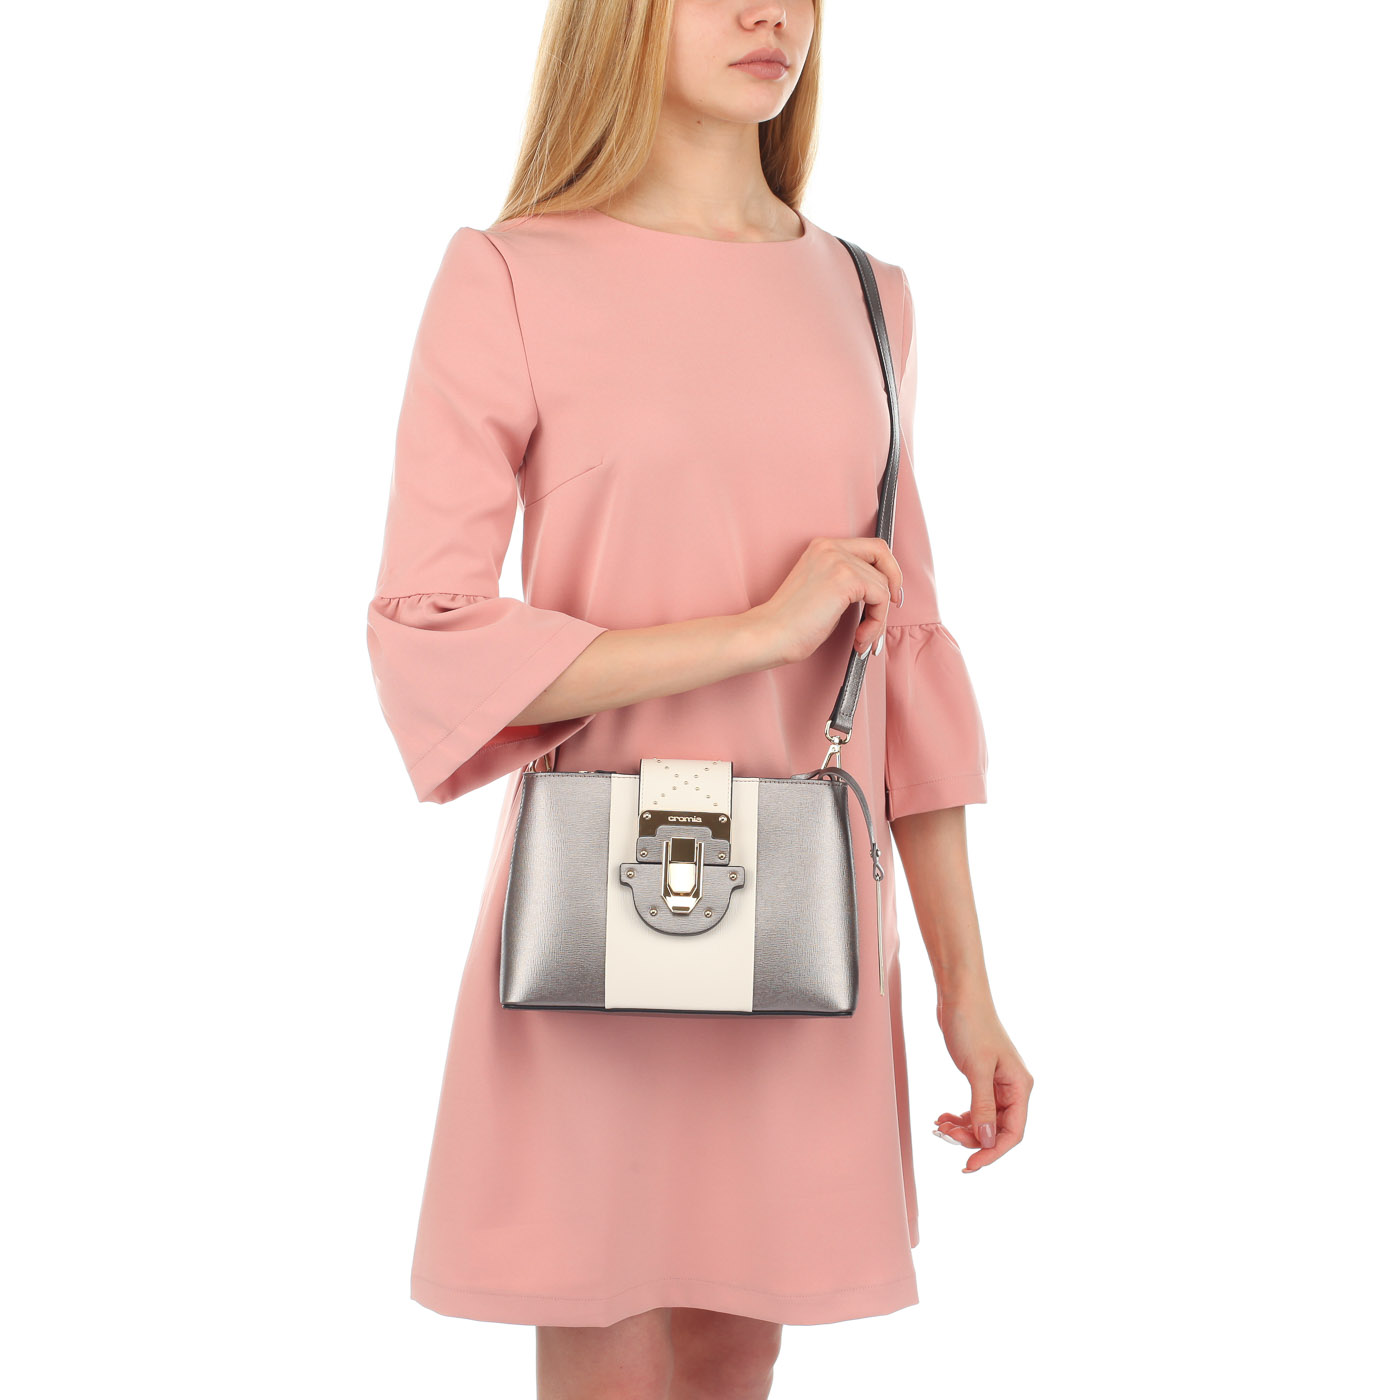 Женская сумочка со съемным ремешком Cromia Melania